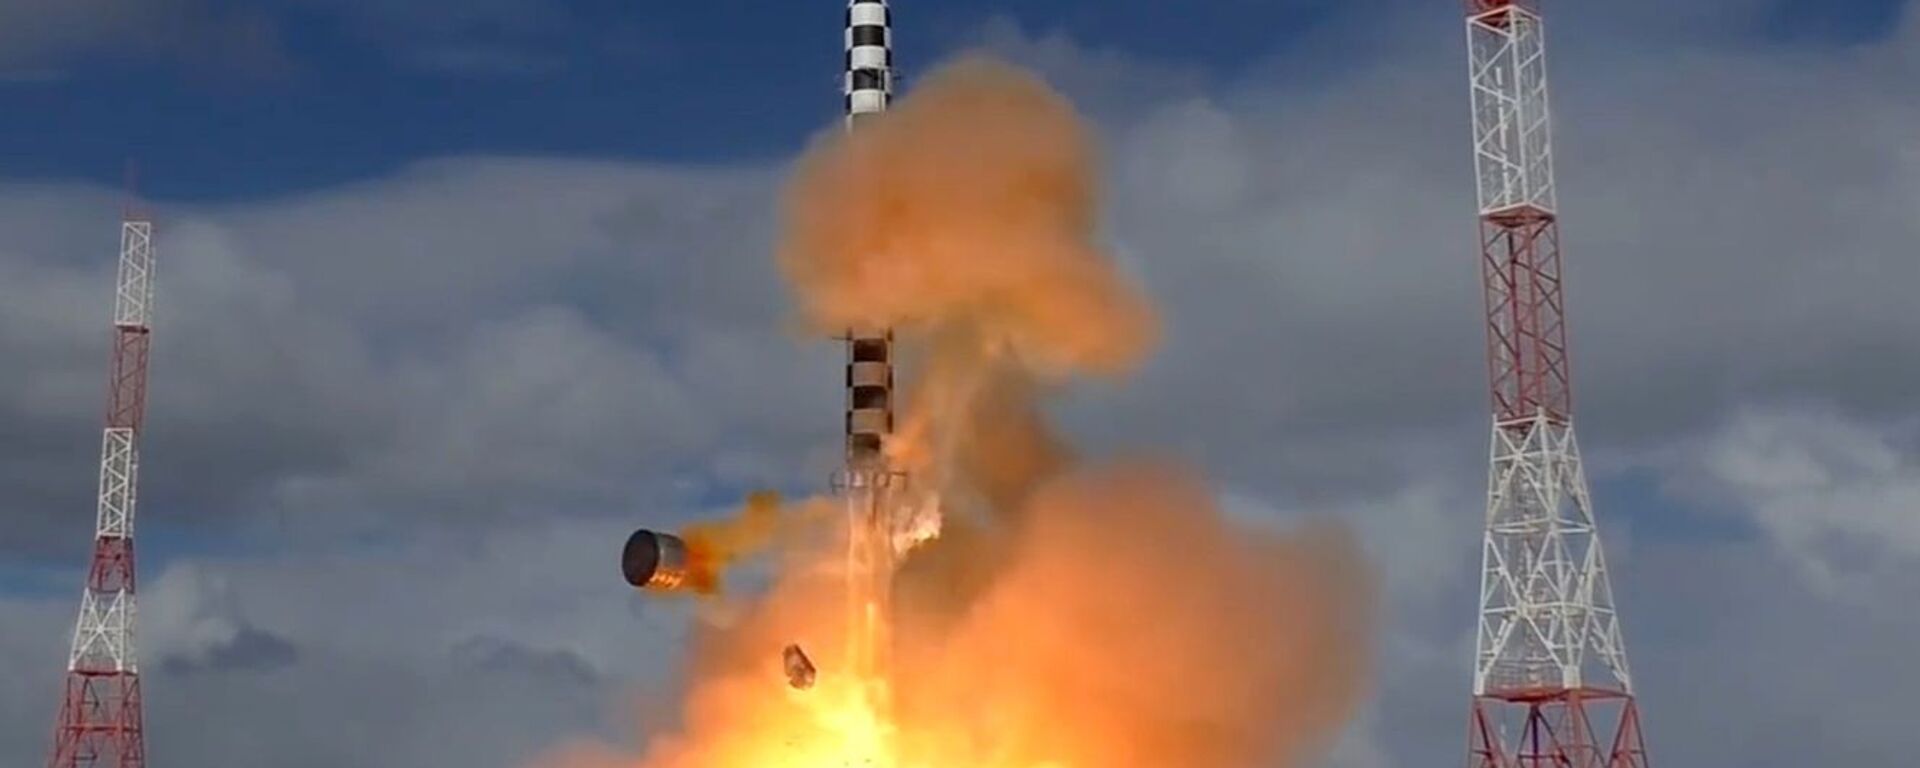 Запуск ракеты «Сармат» с космодрома «Плесецк» - Sputnik Latvija, 1920, 12.09.2020